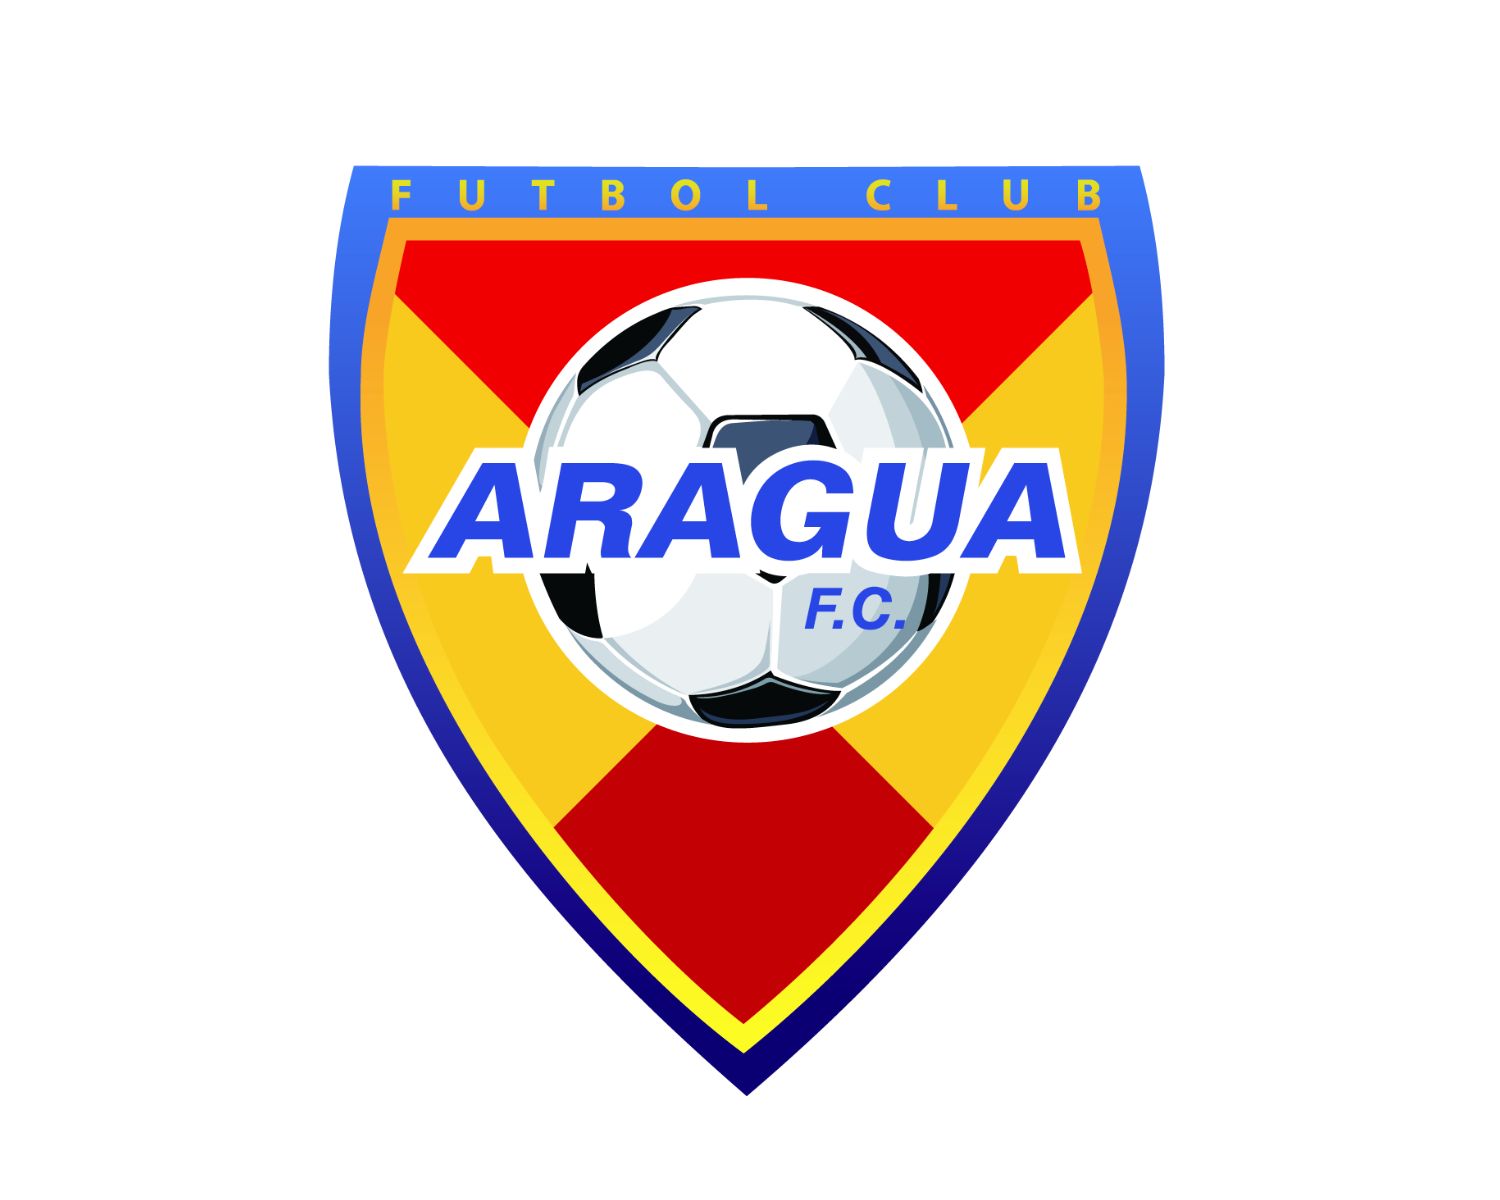 aragua-fc-22-football-club-facts